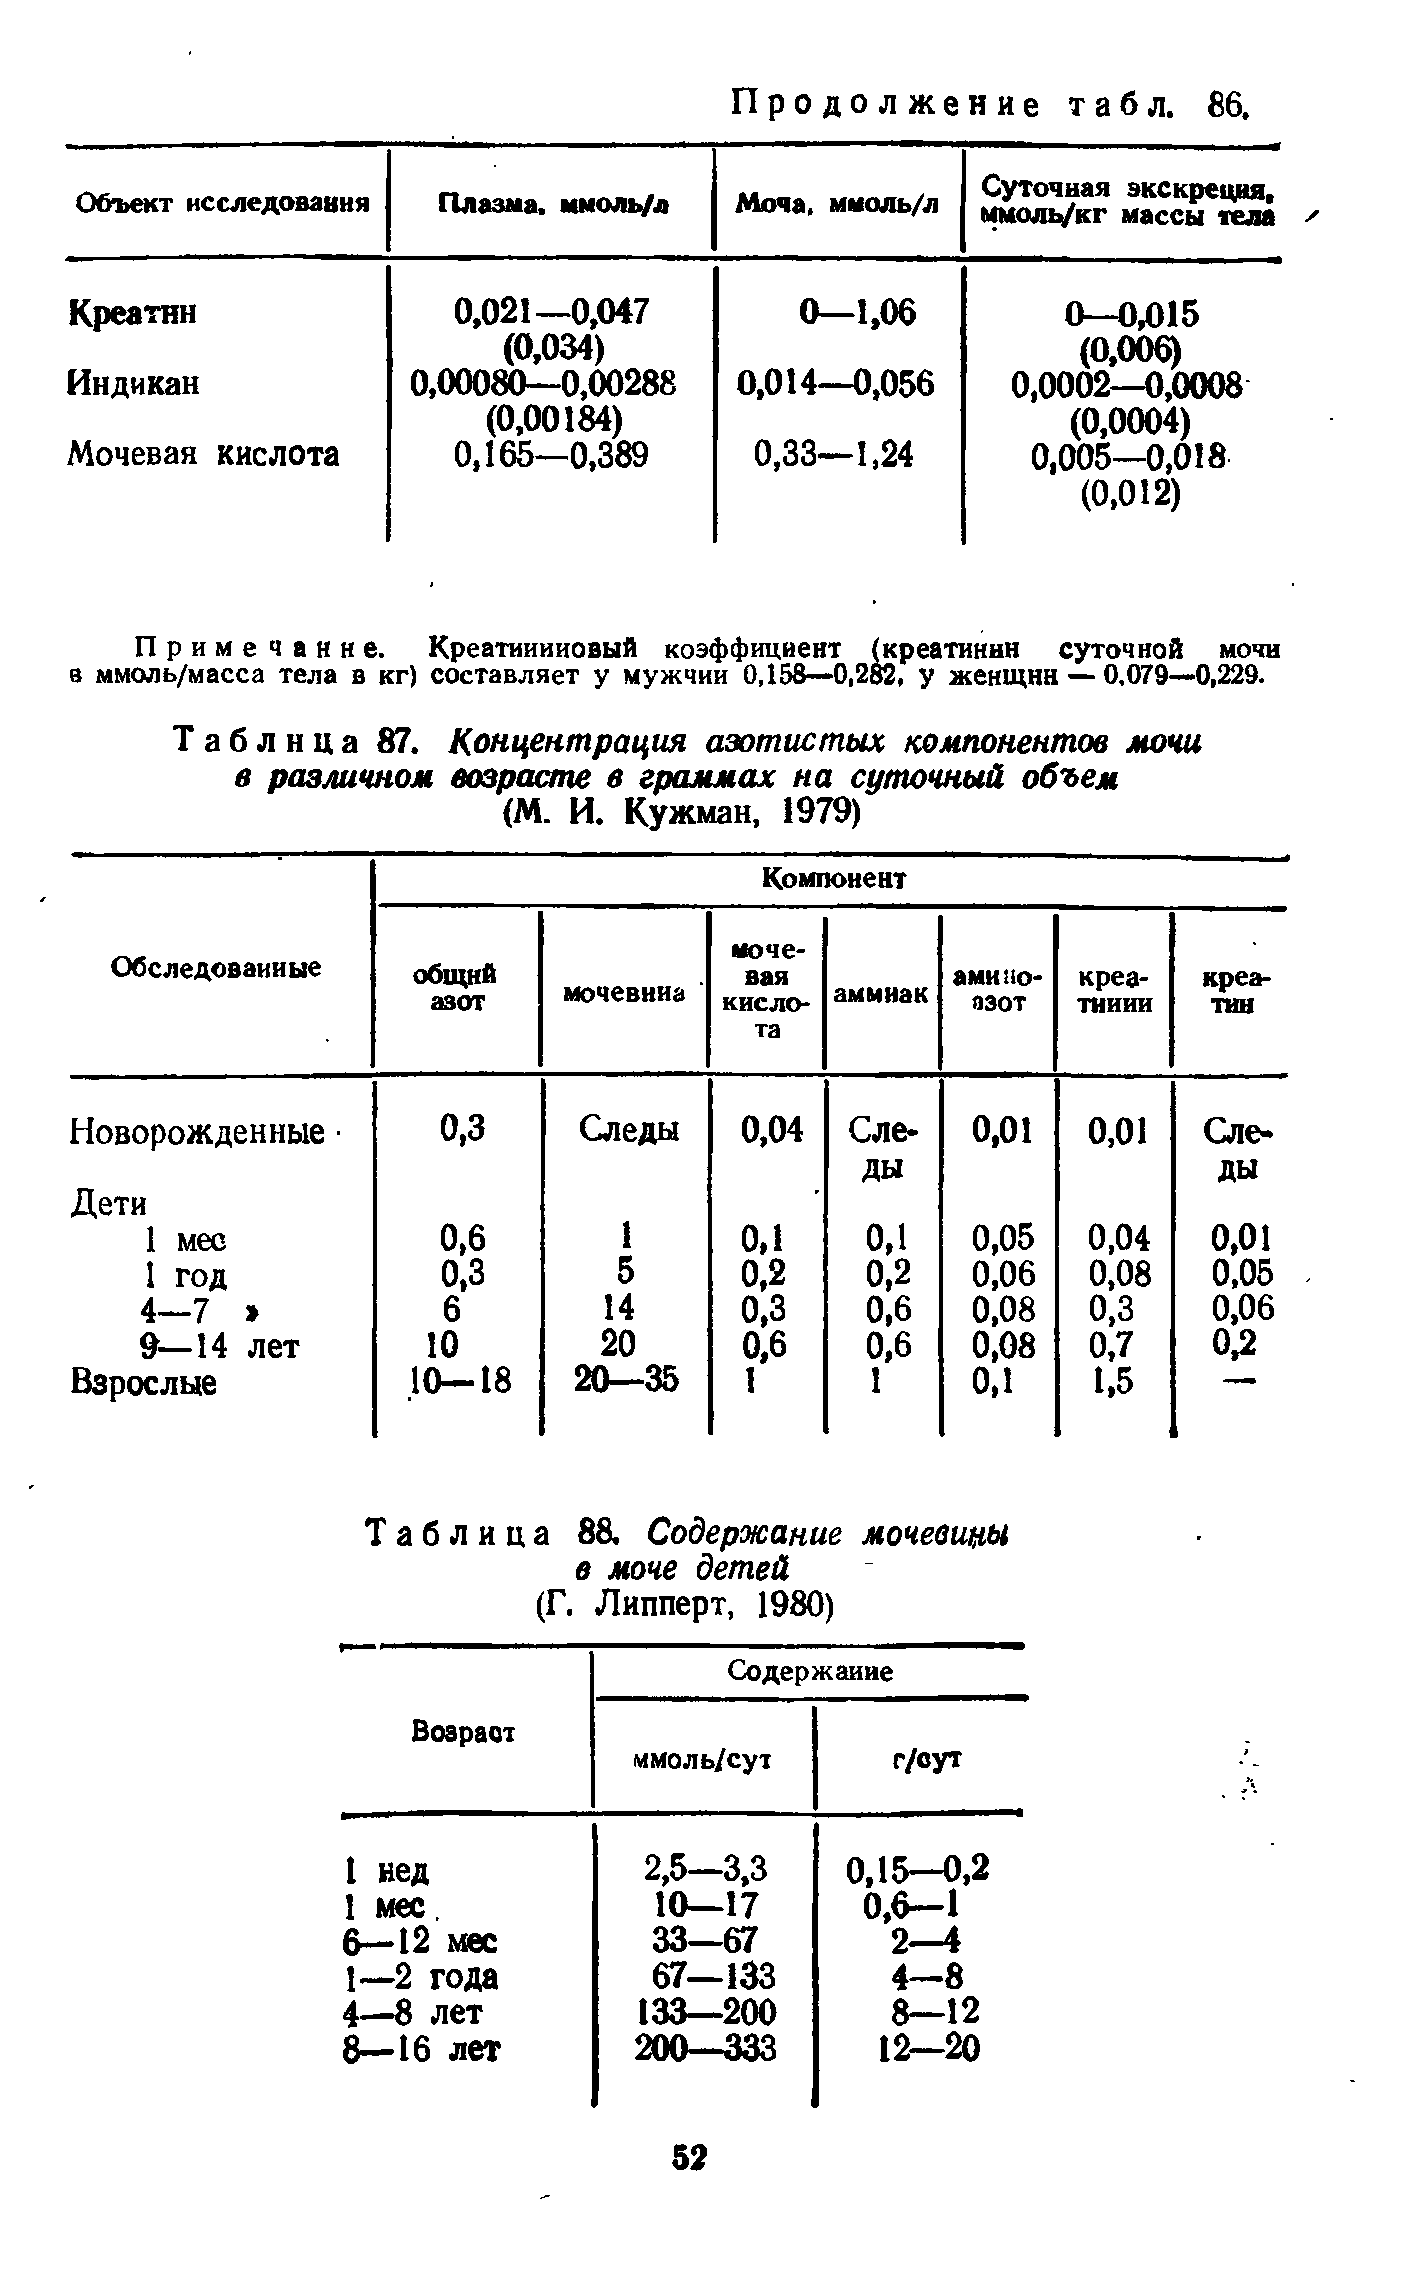 Таблица 87. Концентрация азотистых компонентов мочи в различном возрасте в граммах на суточный объем (М. И. Кужман, 1979)...